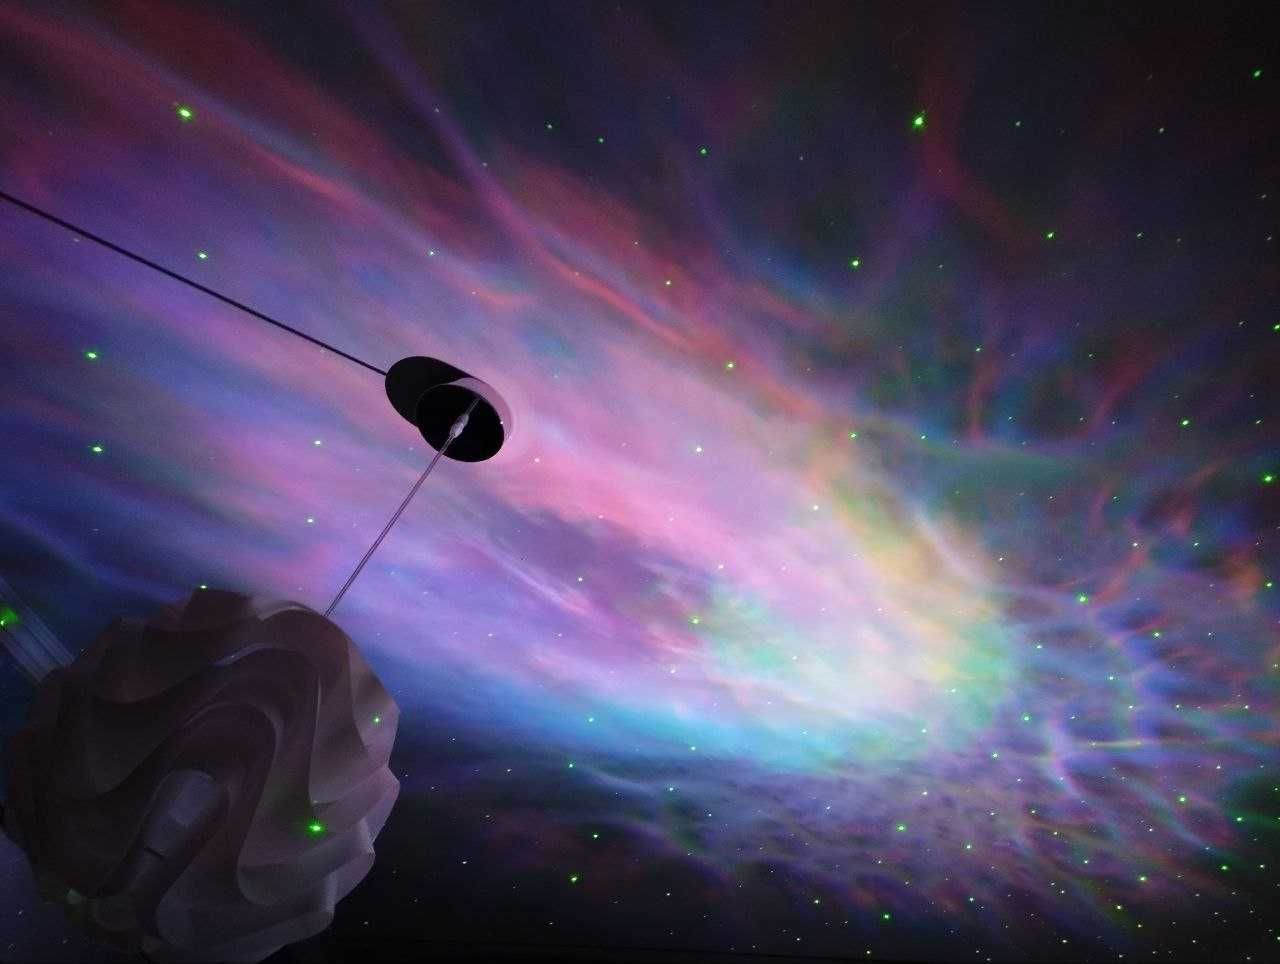 Проектор галактик астронавт, есть самовывоз в Запорожье от 2 шт 650